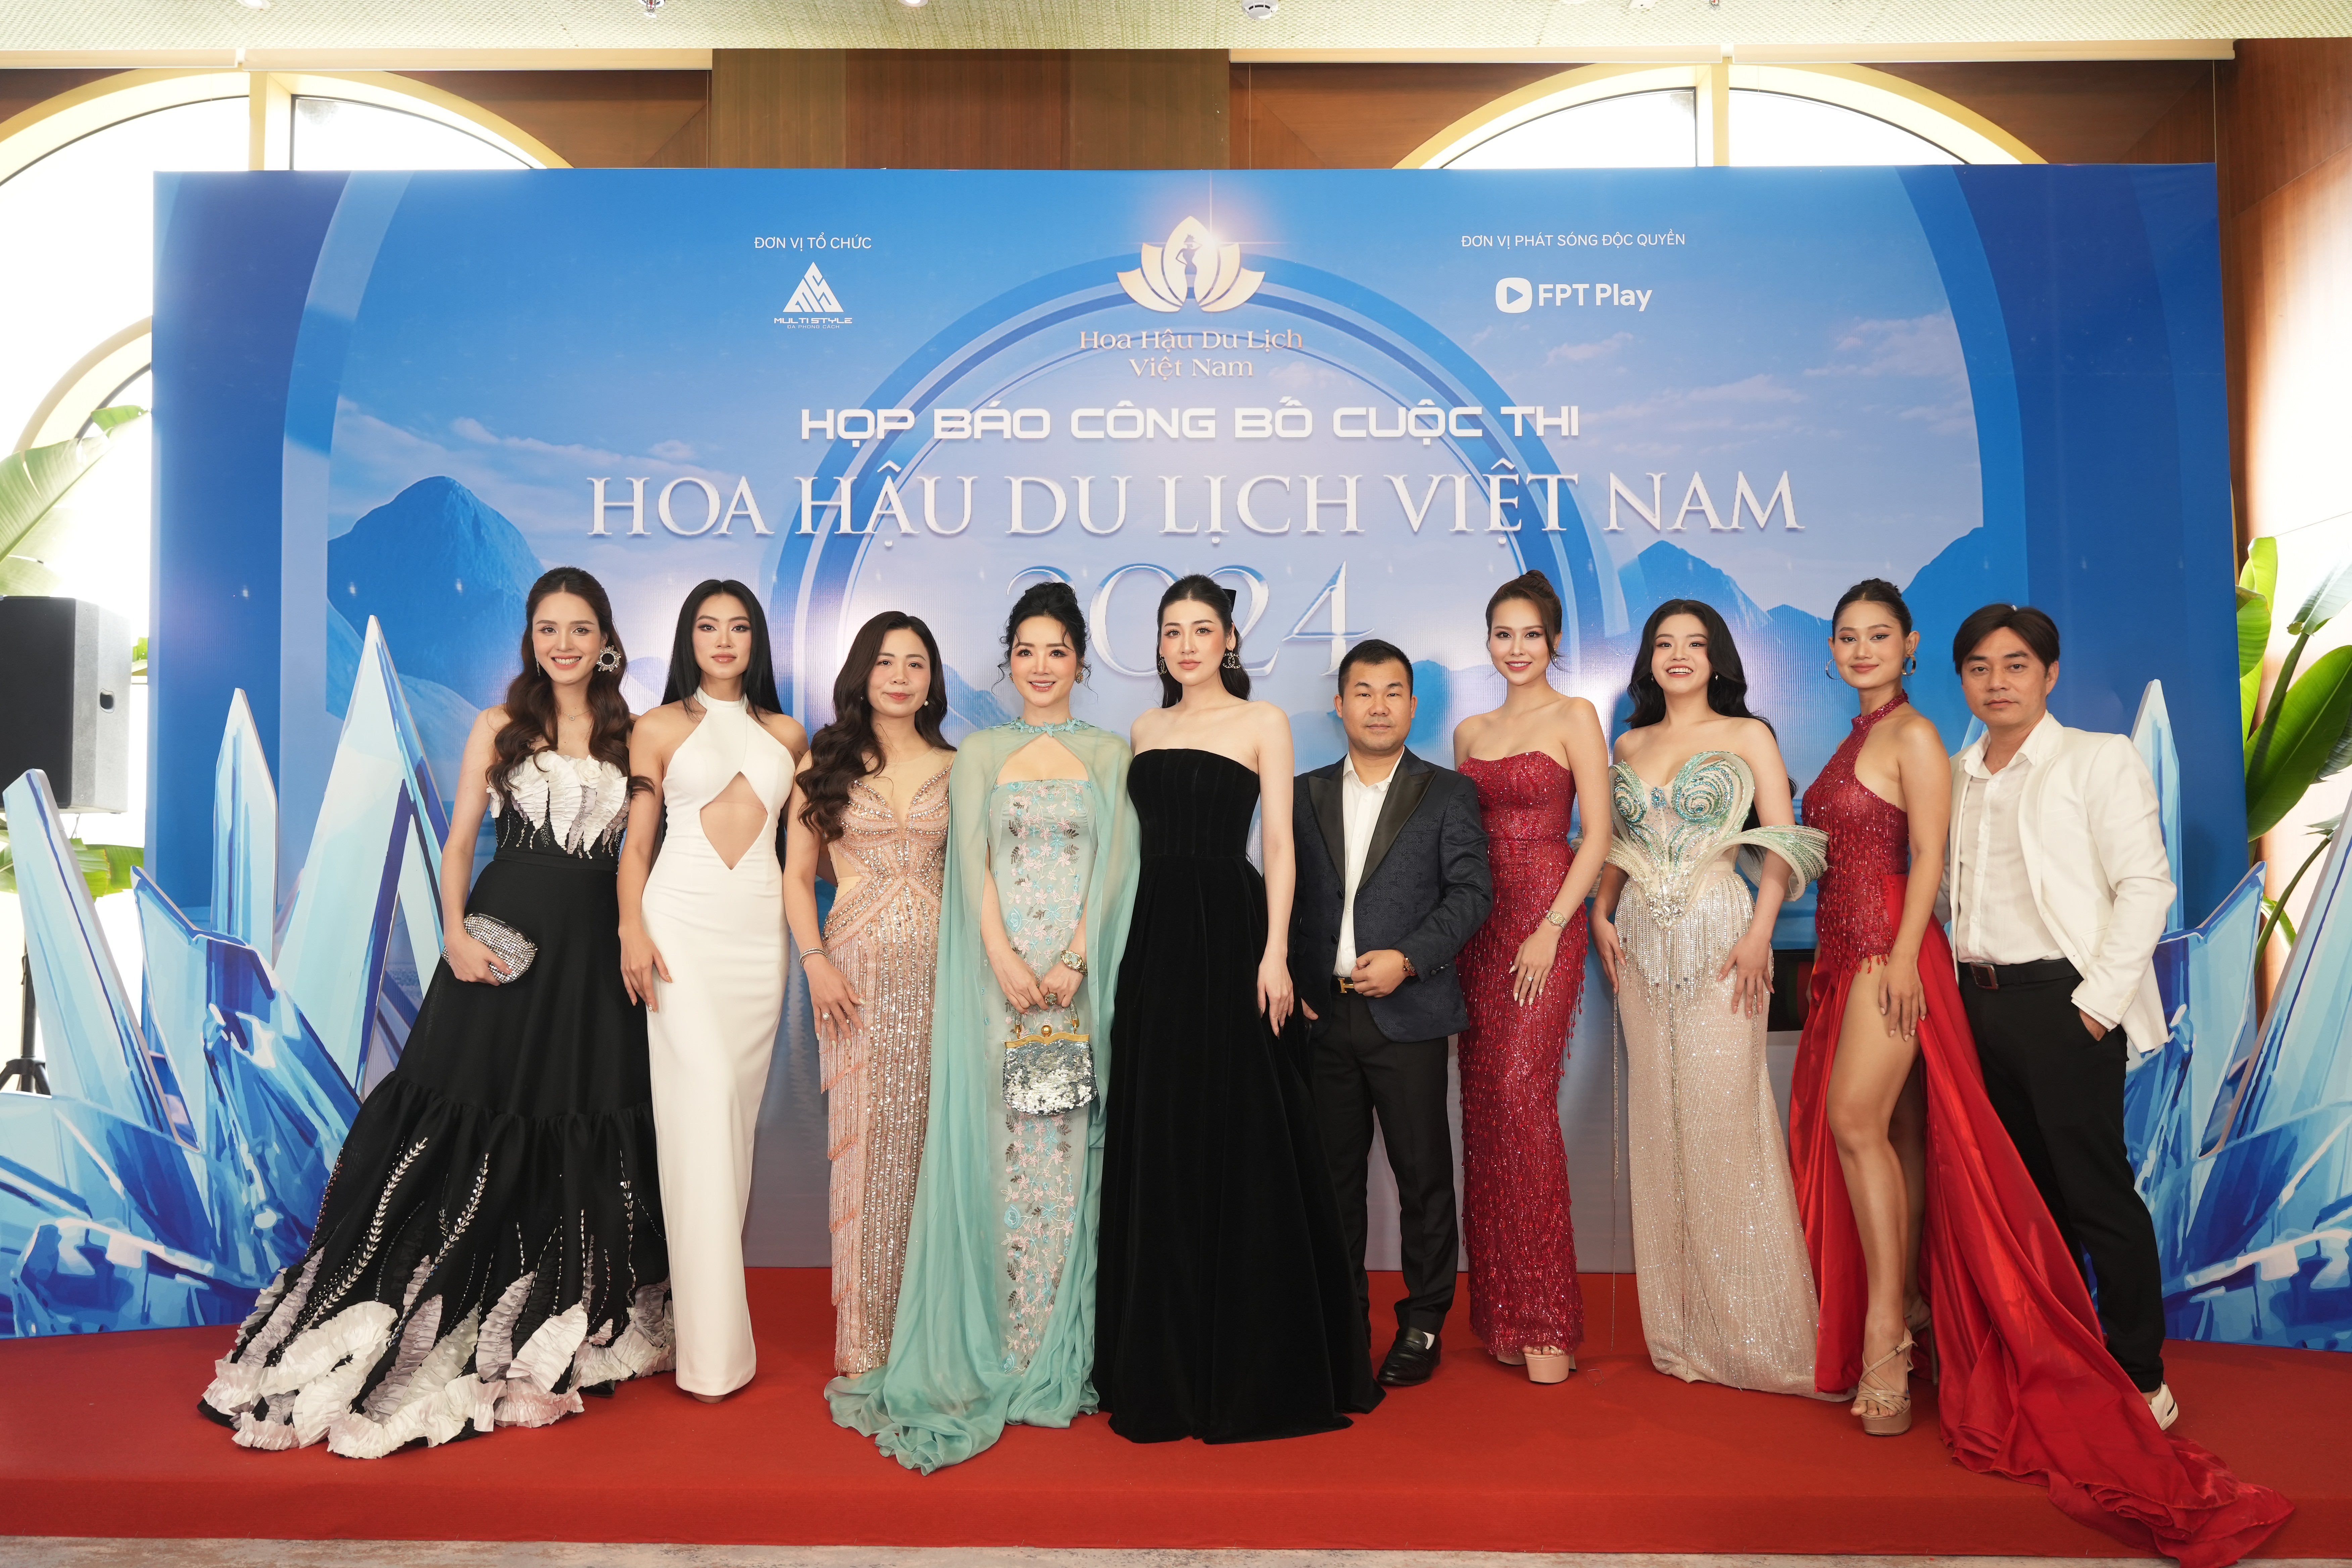 Cuộc thi Hoa hậu Du lịch Việt Nam 2024 chính thức khởi động